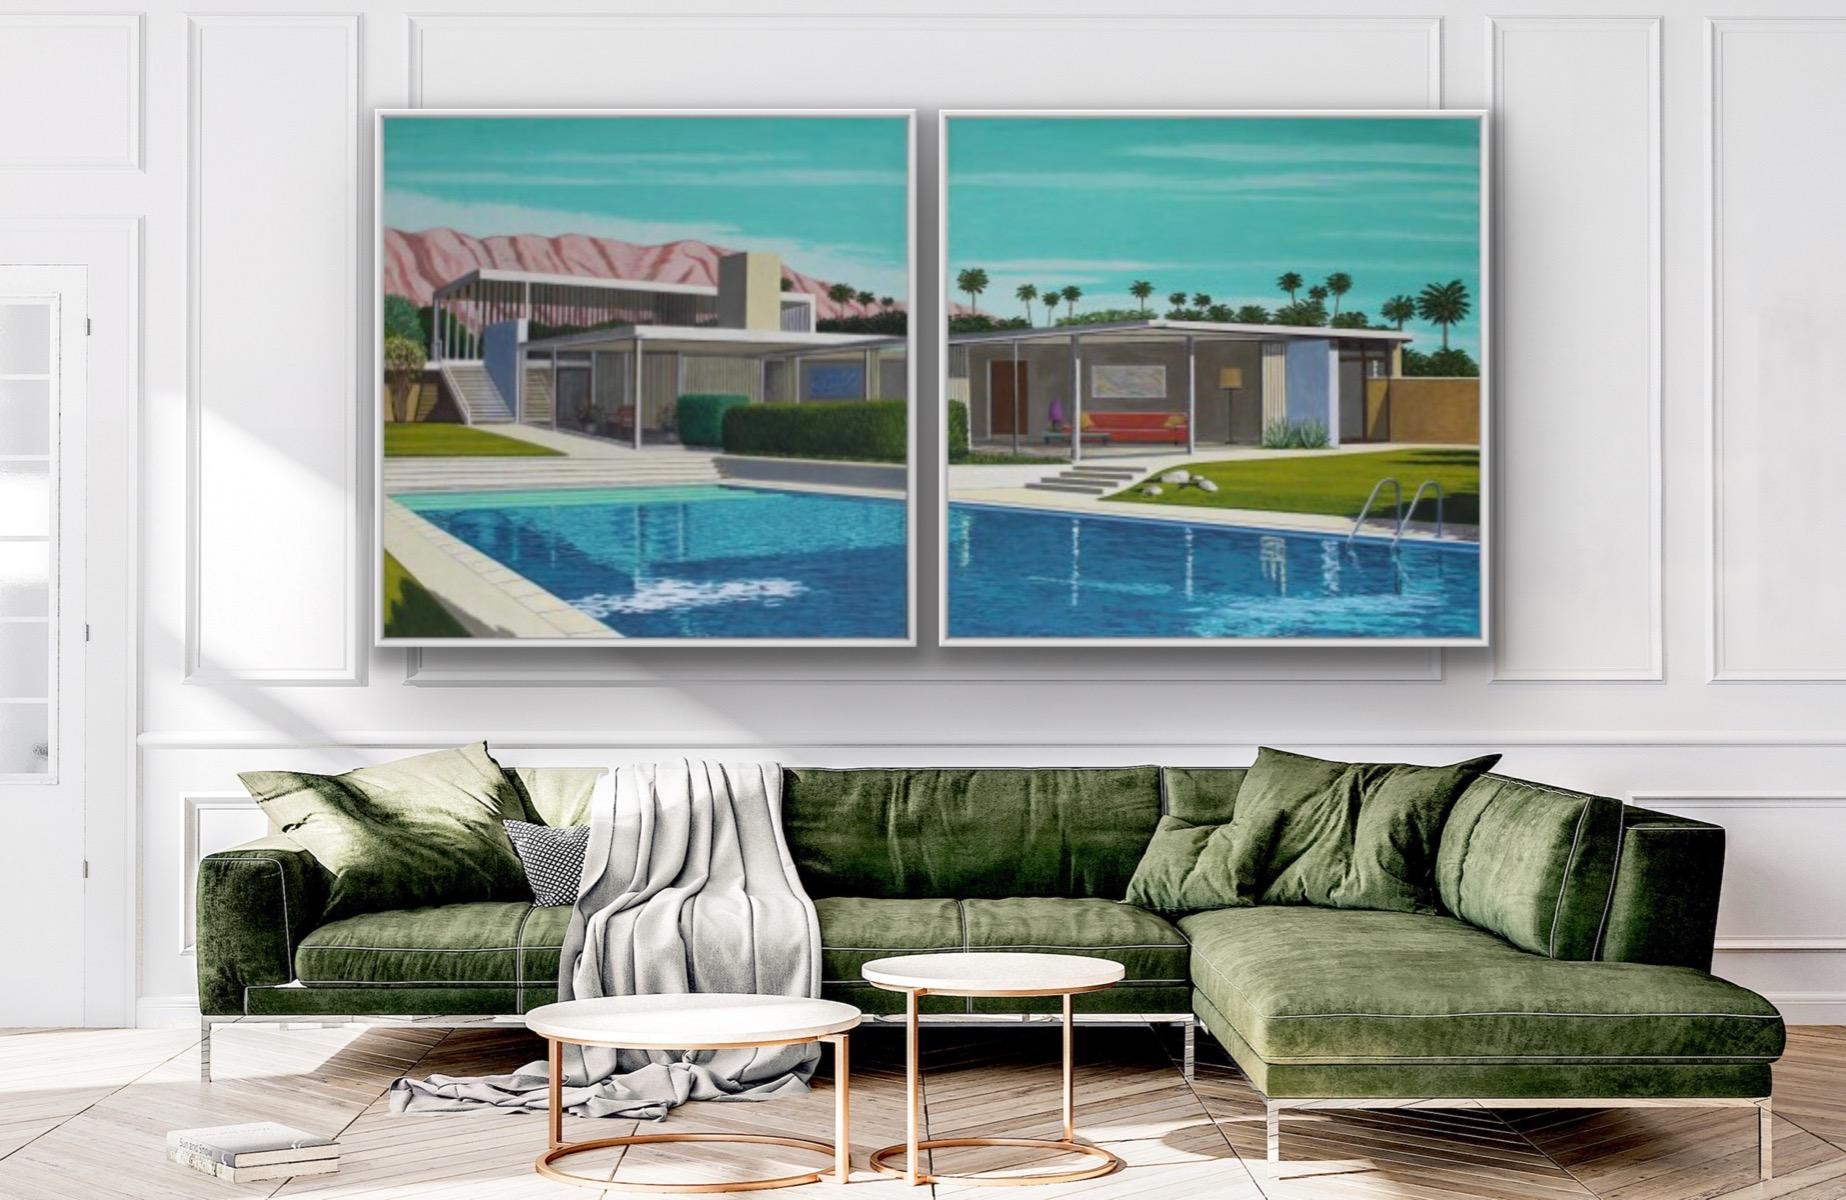 La maison du Kaufmann, diptyque, architecture, maison, paysage, piscine - Contemporain Painting par Karen Lynn